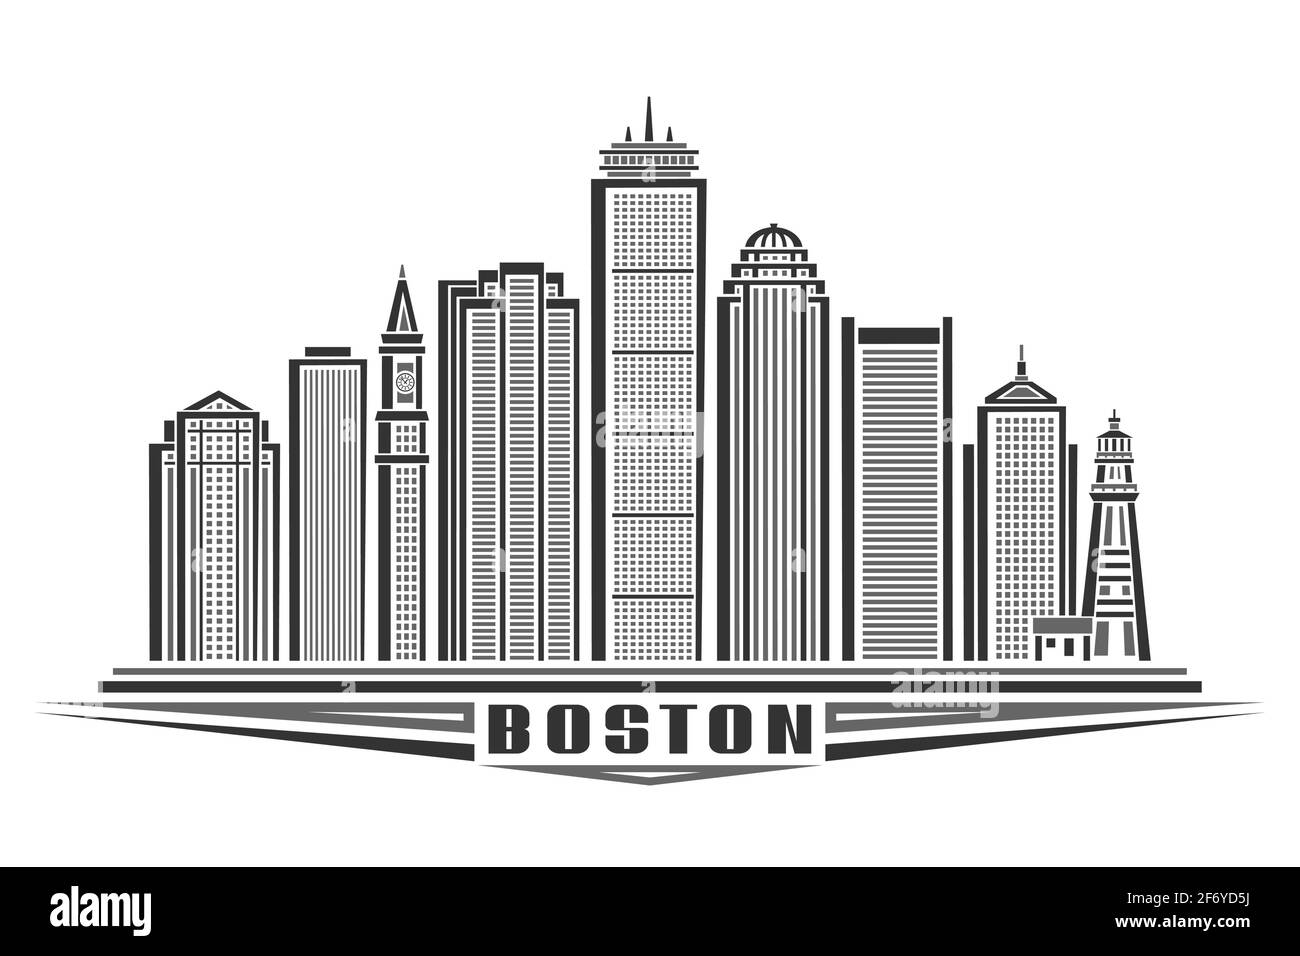 Illustrazione vettoriale di Boston, poster orizzontale monocromatico con design di profilo paesaggio urbano di boston, concetto di arte urbana con esclusiva grafica decorativa Illustrazione Vettoriale